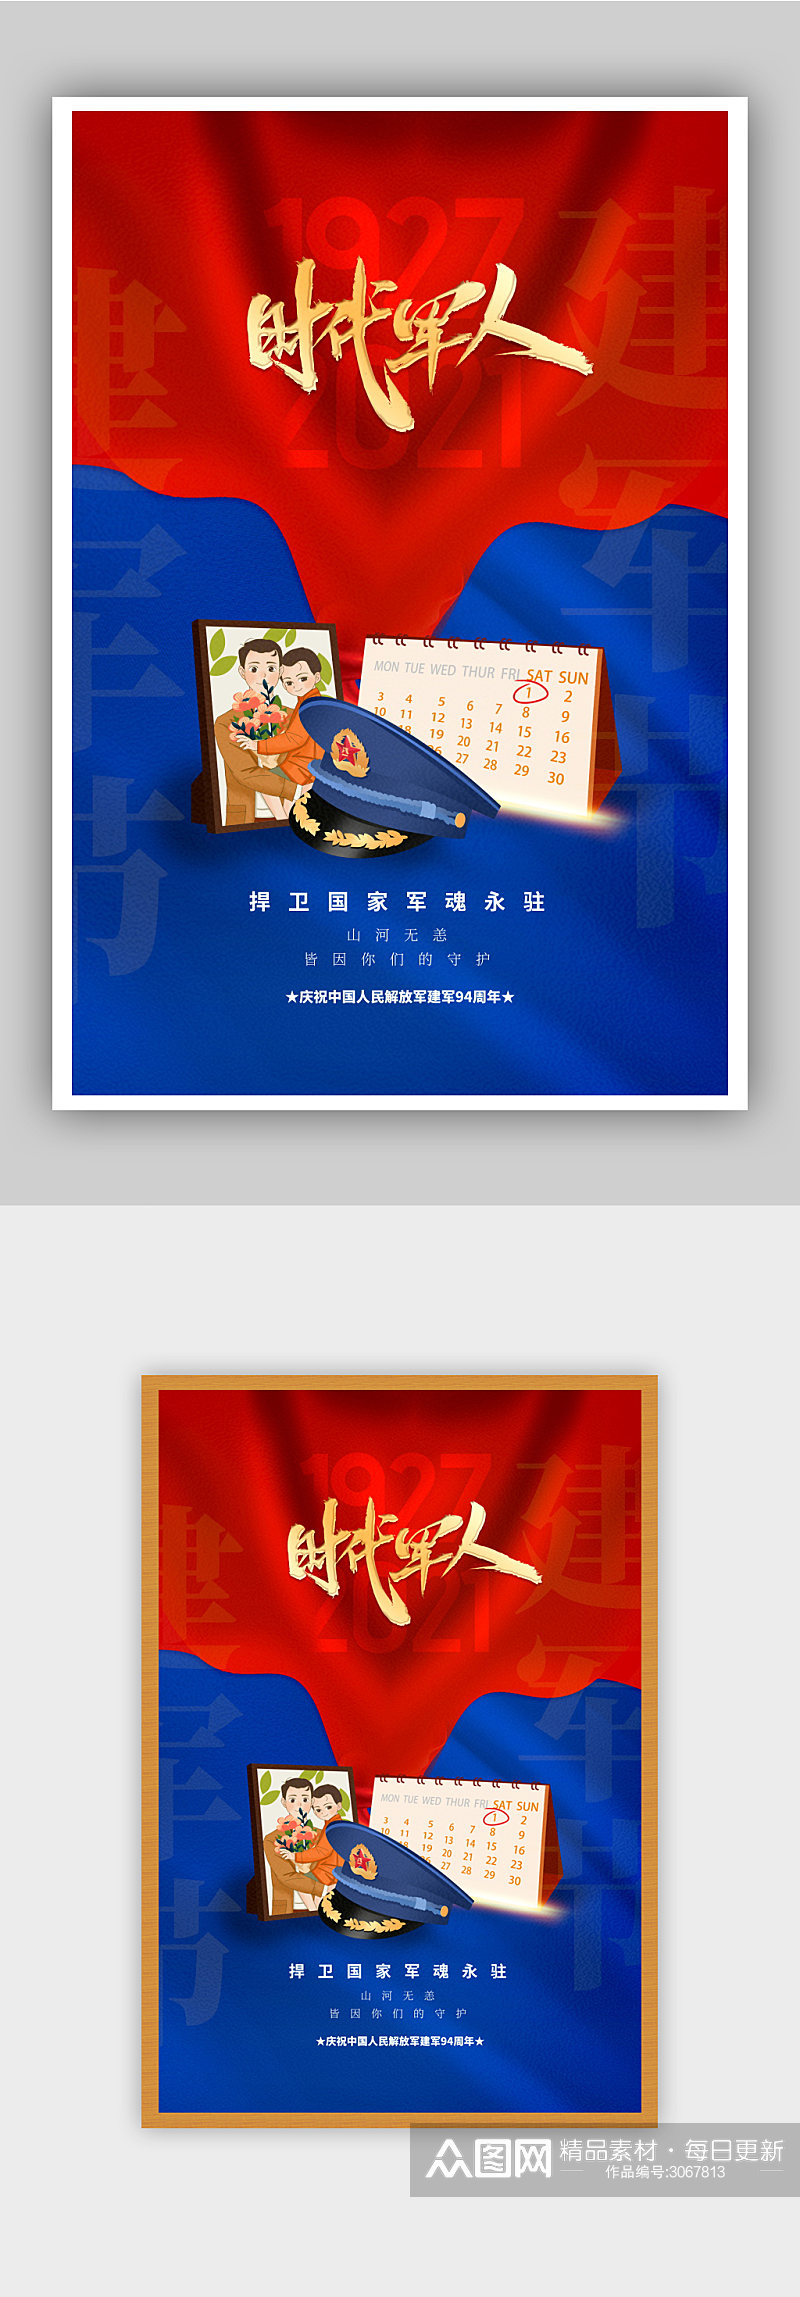 81红蓝拼色八一建军节宣传海报素材